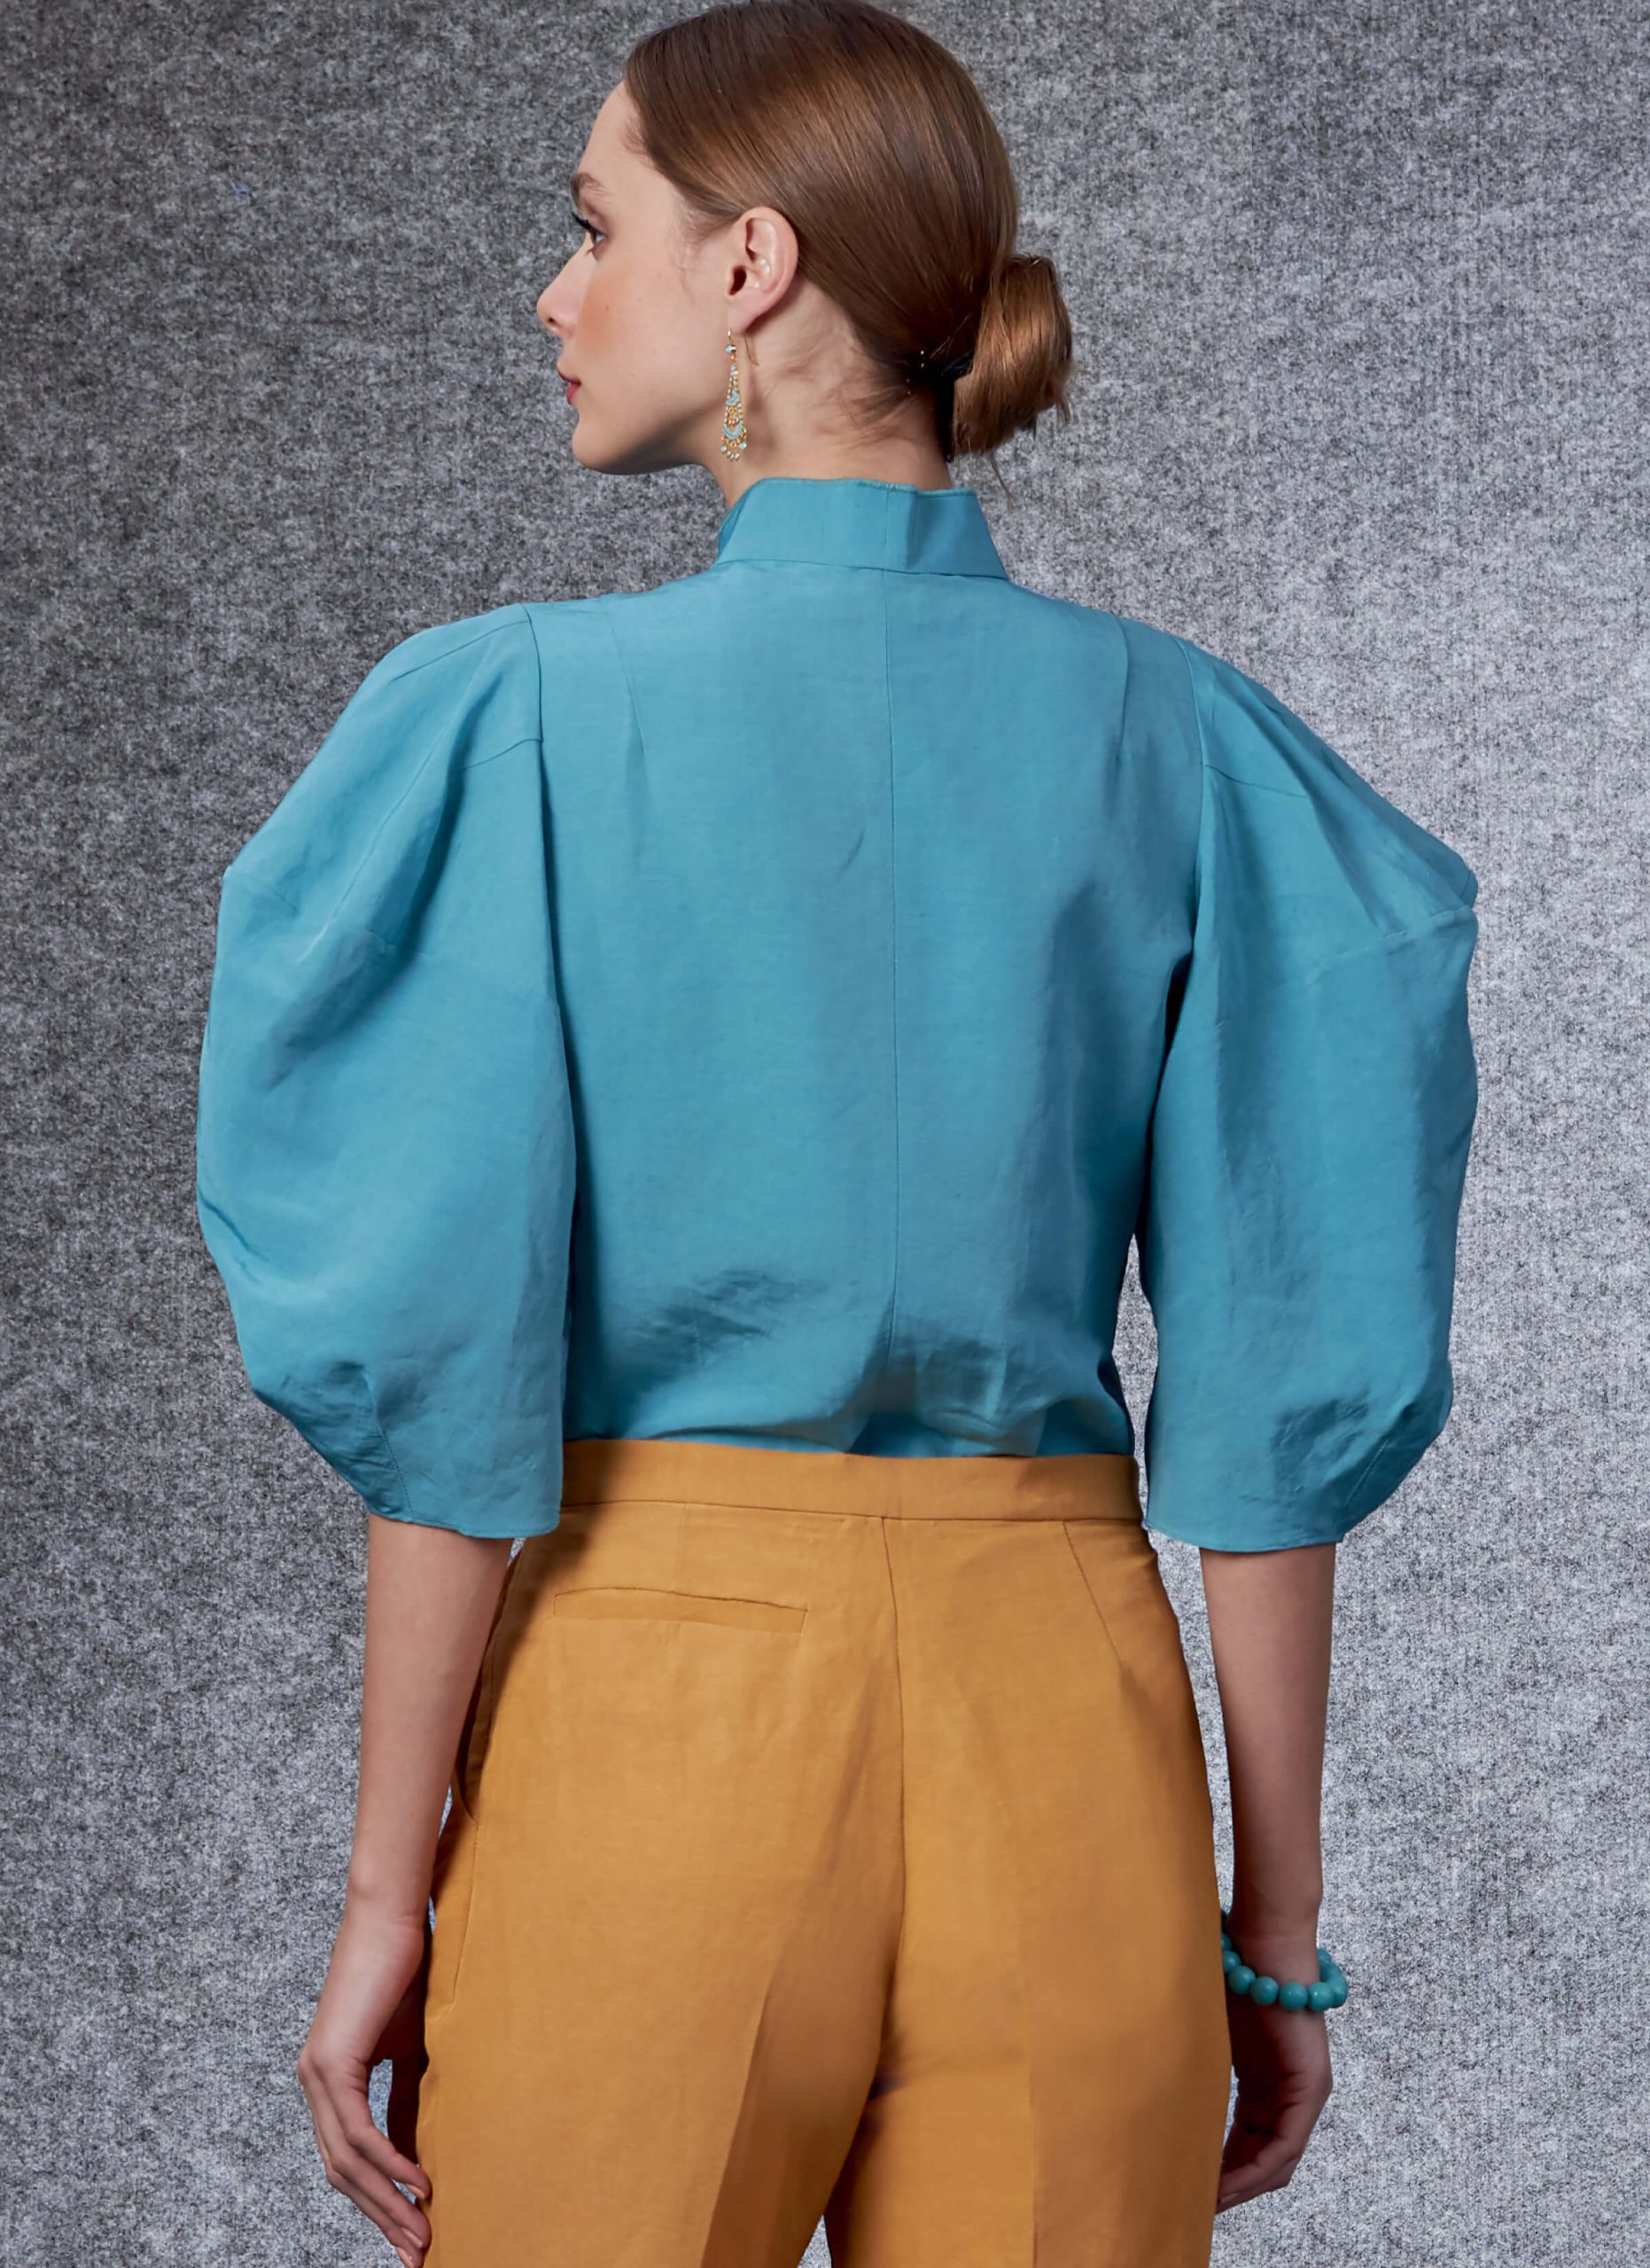 Vogue Patterns V1704 Misses' Top & Trousers, Rachel Comey